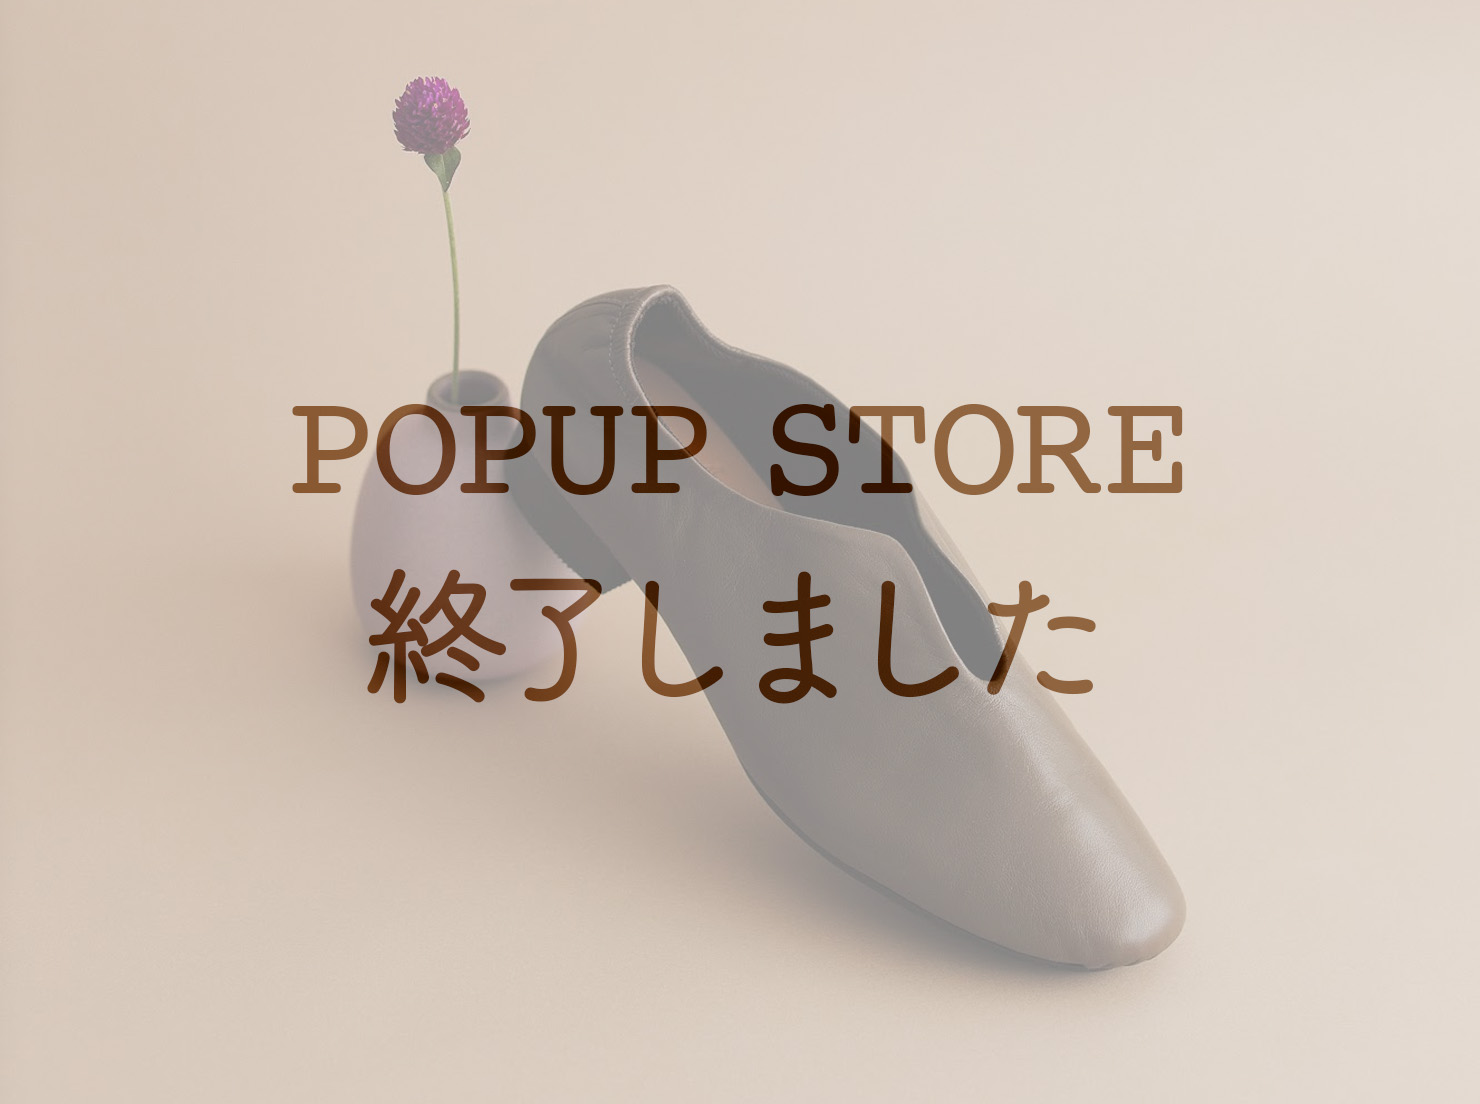 そごう横浜店 POPUP STORE Vol.4(こちらのPOPUP STOREは終了しました)